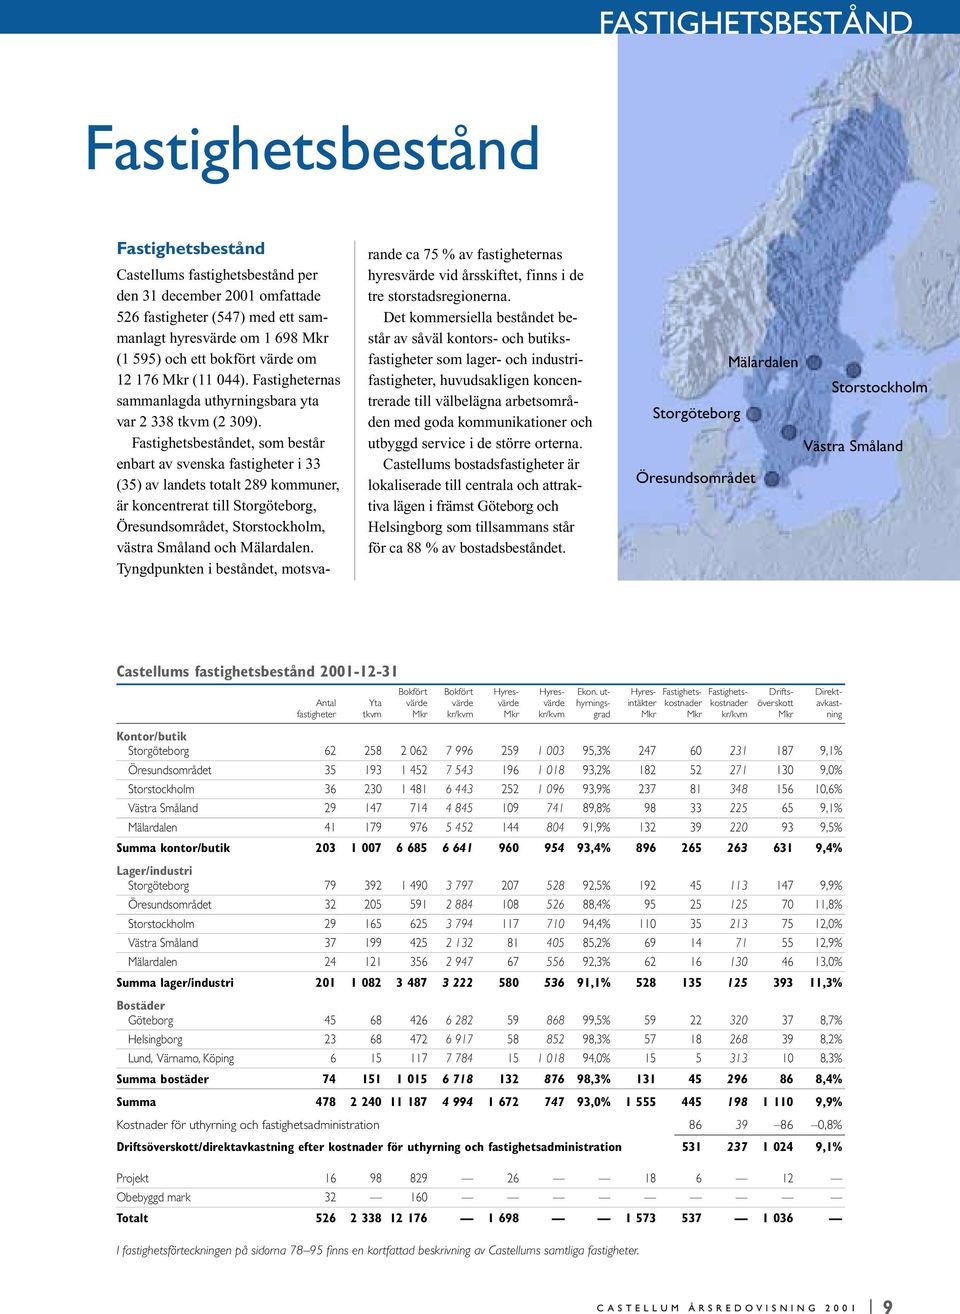 Fastighetsbeståndet, som består enbart av svenska fastigheter i 33 (35) av landets totalt 289 kommuner, är koncentrerat till Storgöteborg, Öresundsområdet, Storstockholm, västra Småland och